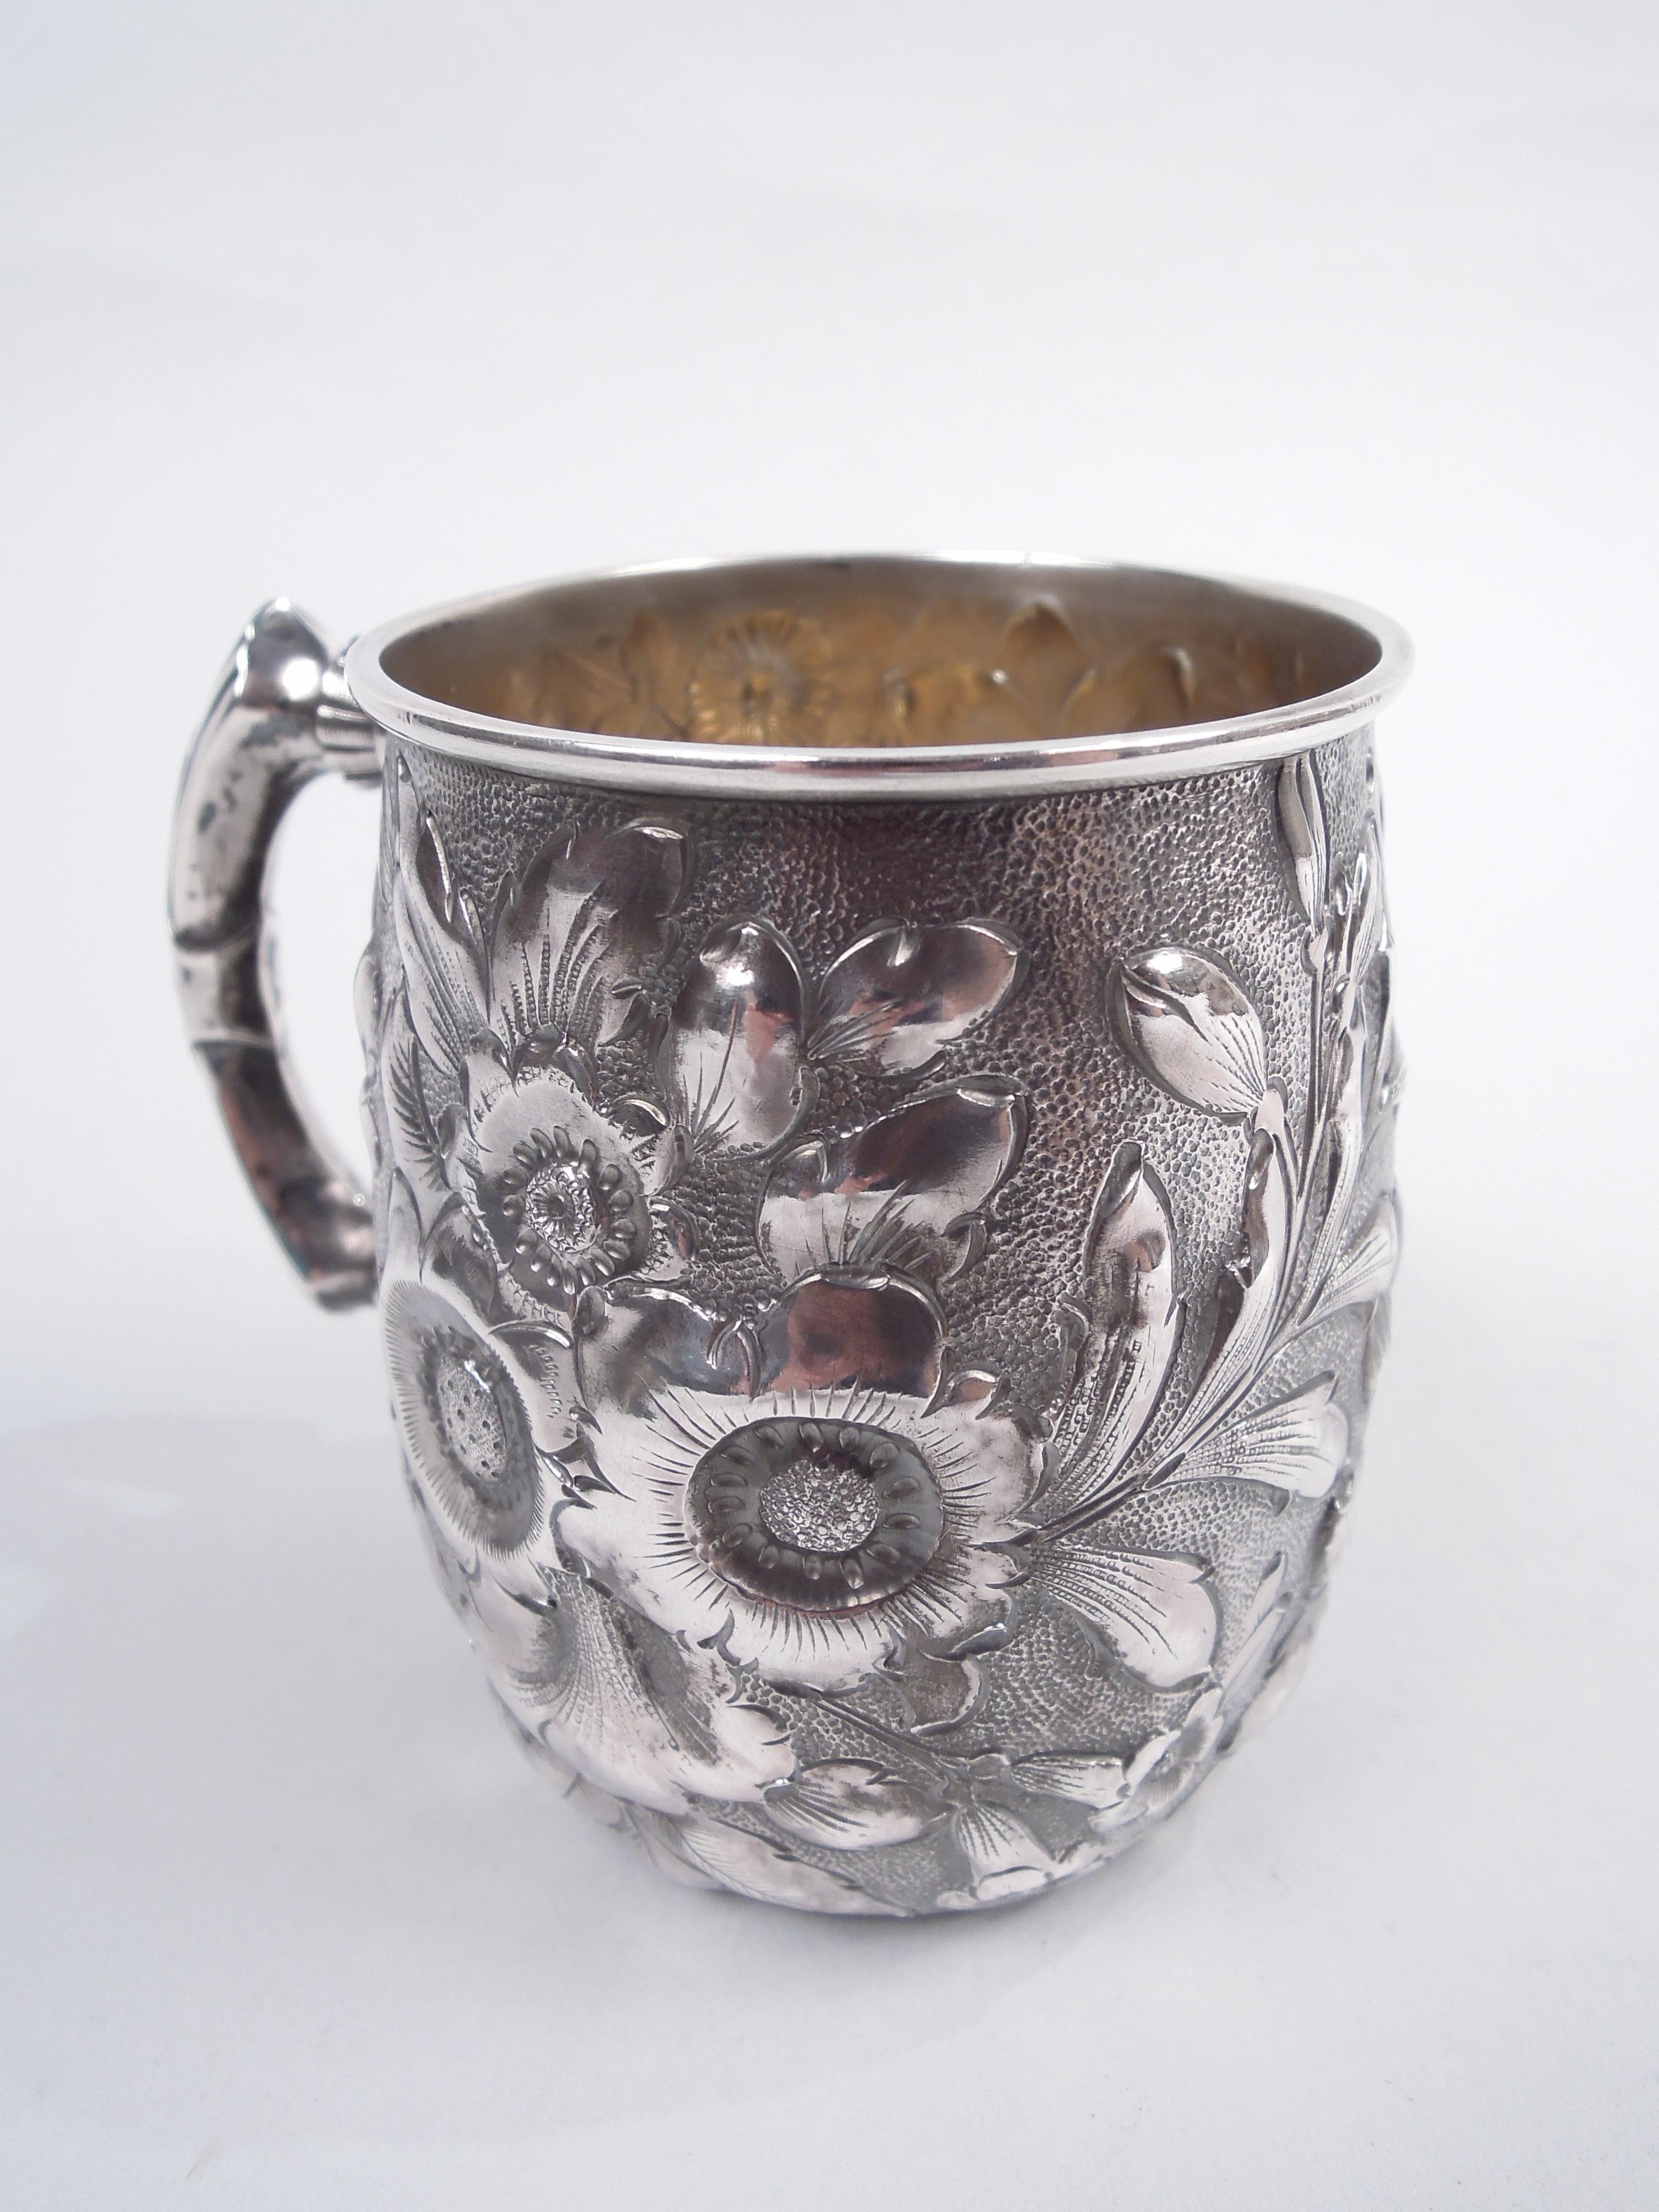 Repoussé Antique Shiebler Victorian Repousse Sterling Silver Baby Cup For Sale